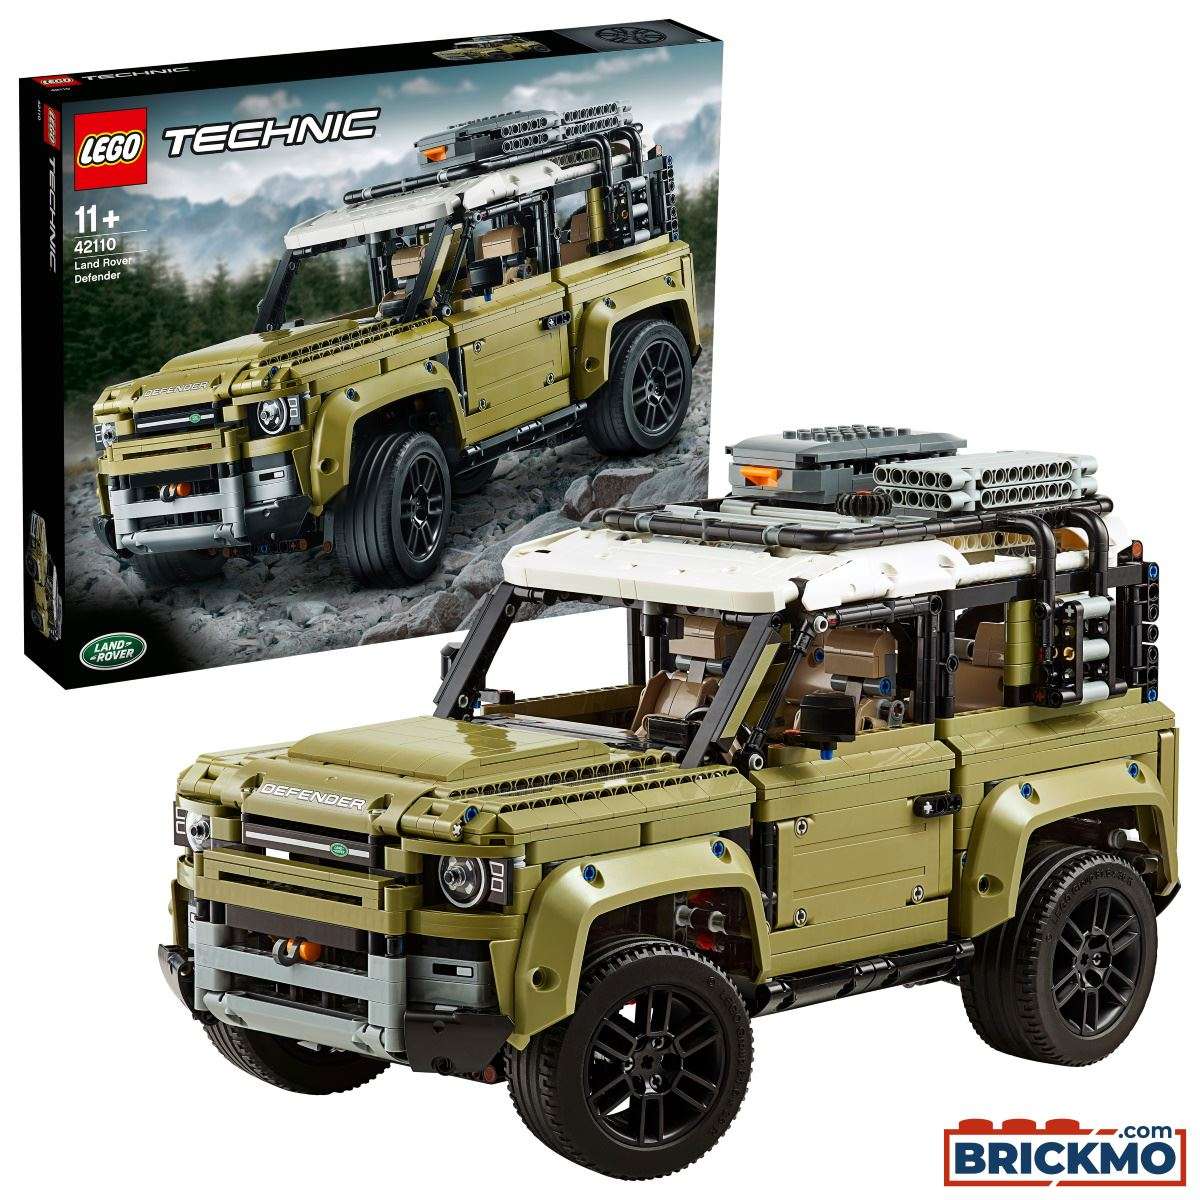 LEGO Technic 42110 Land Rover Defender Geländewagen 42110